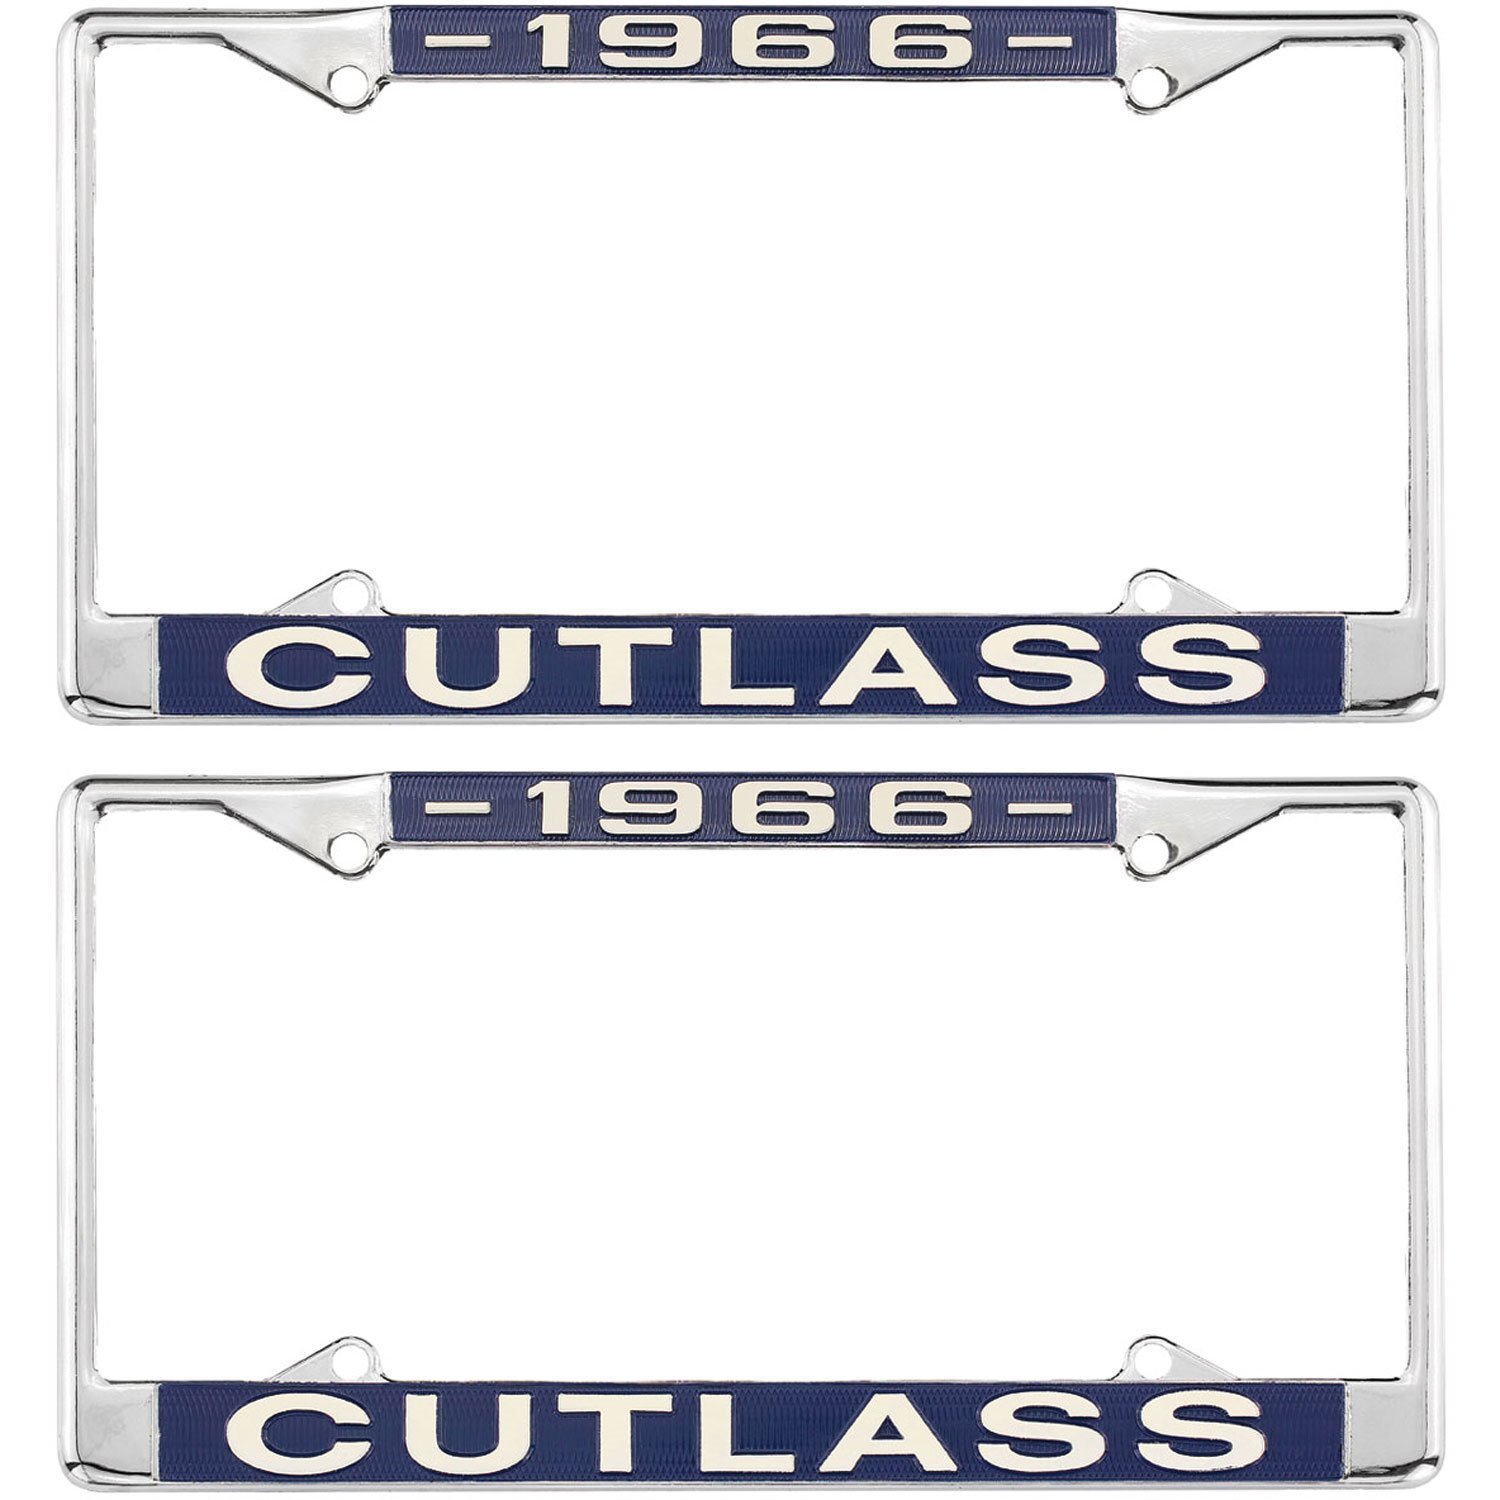 License Plate Frame 1966 Cutlass